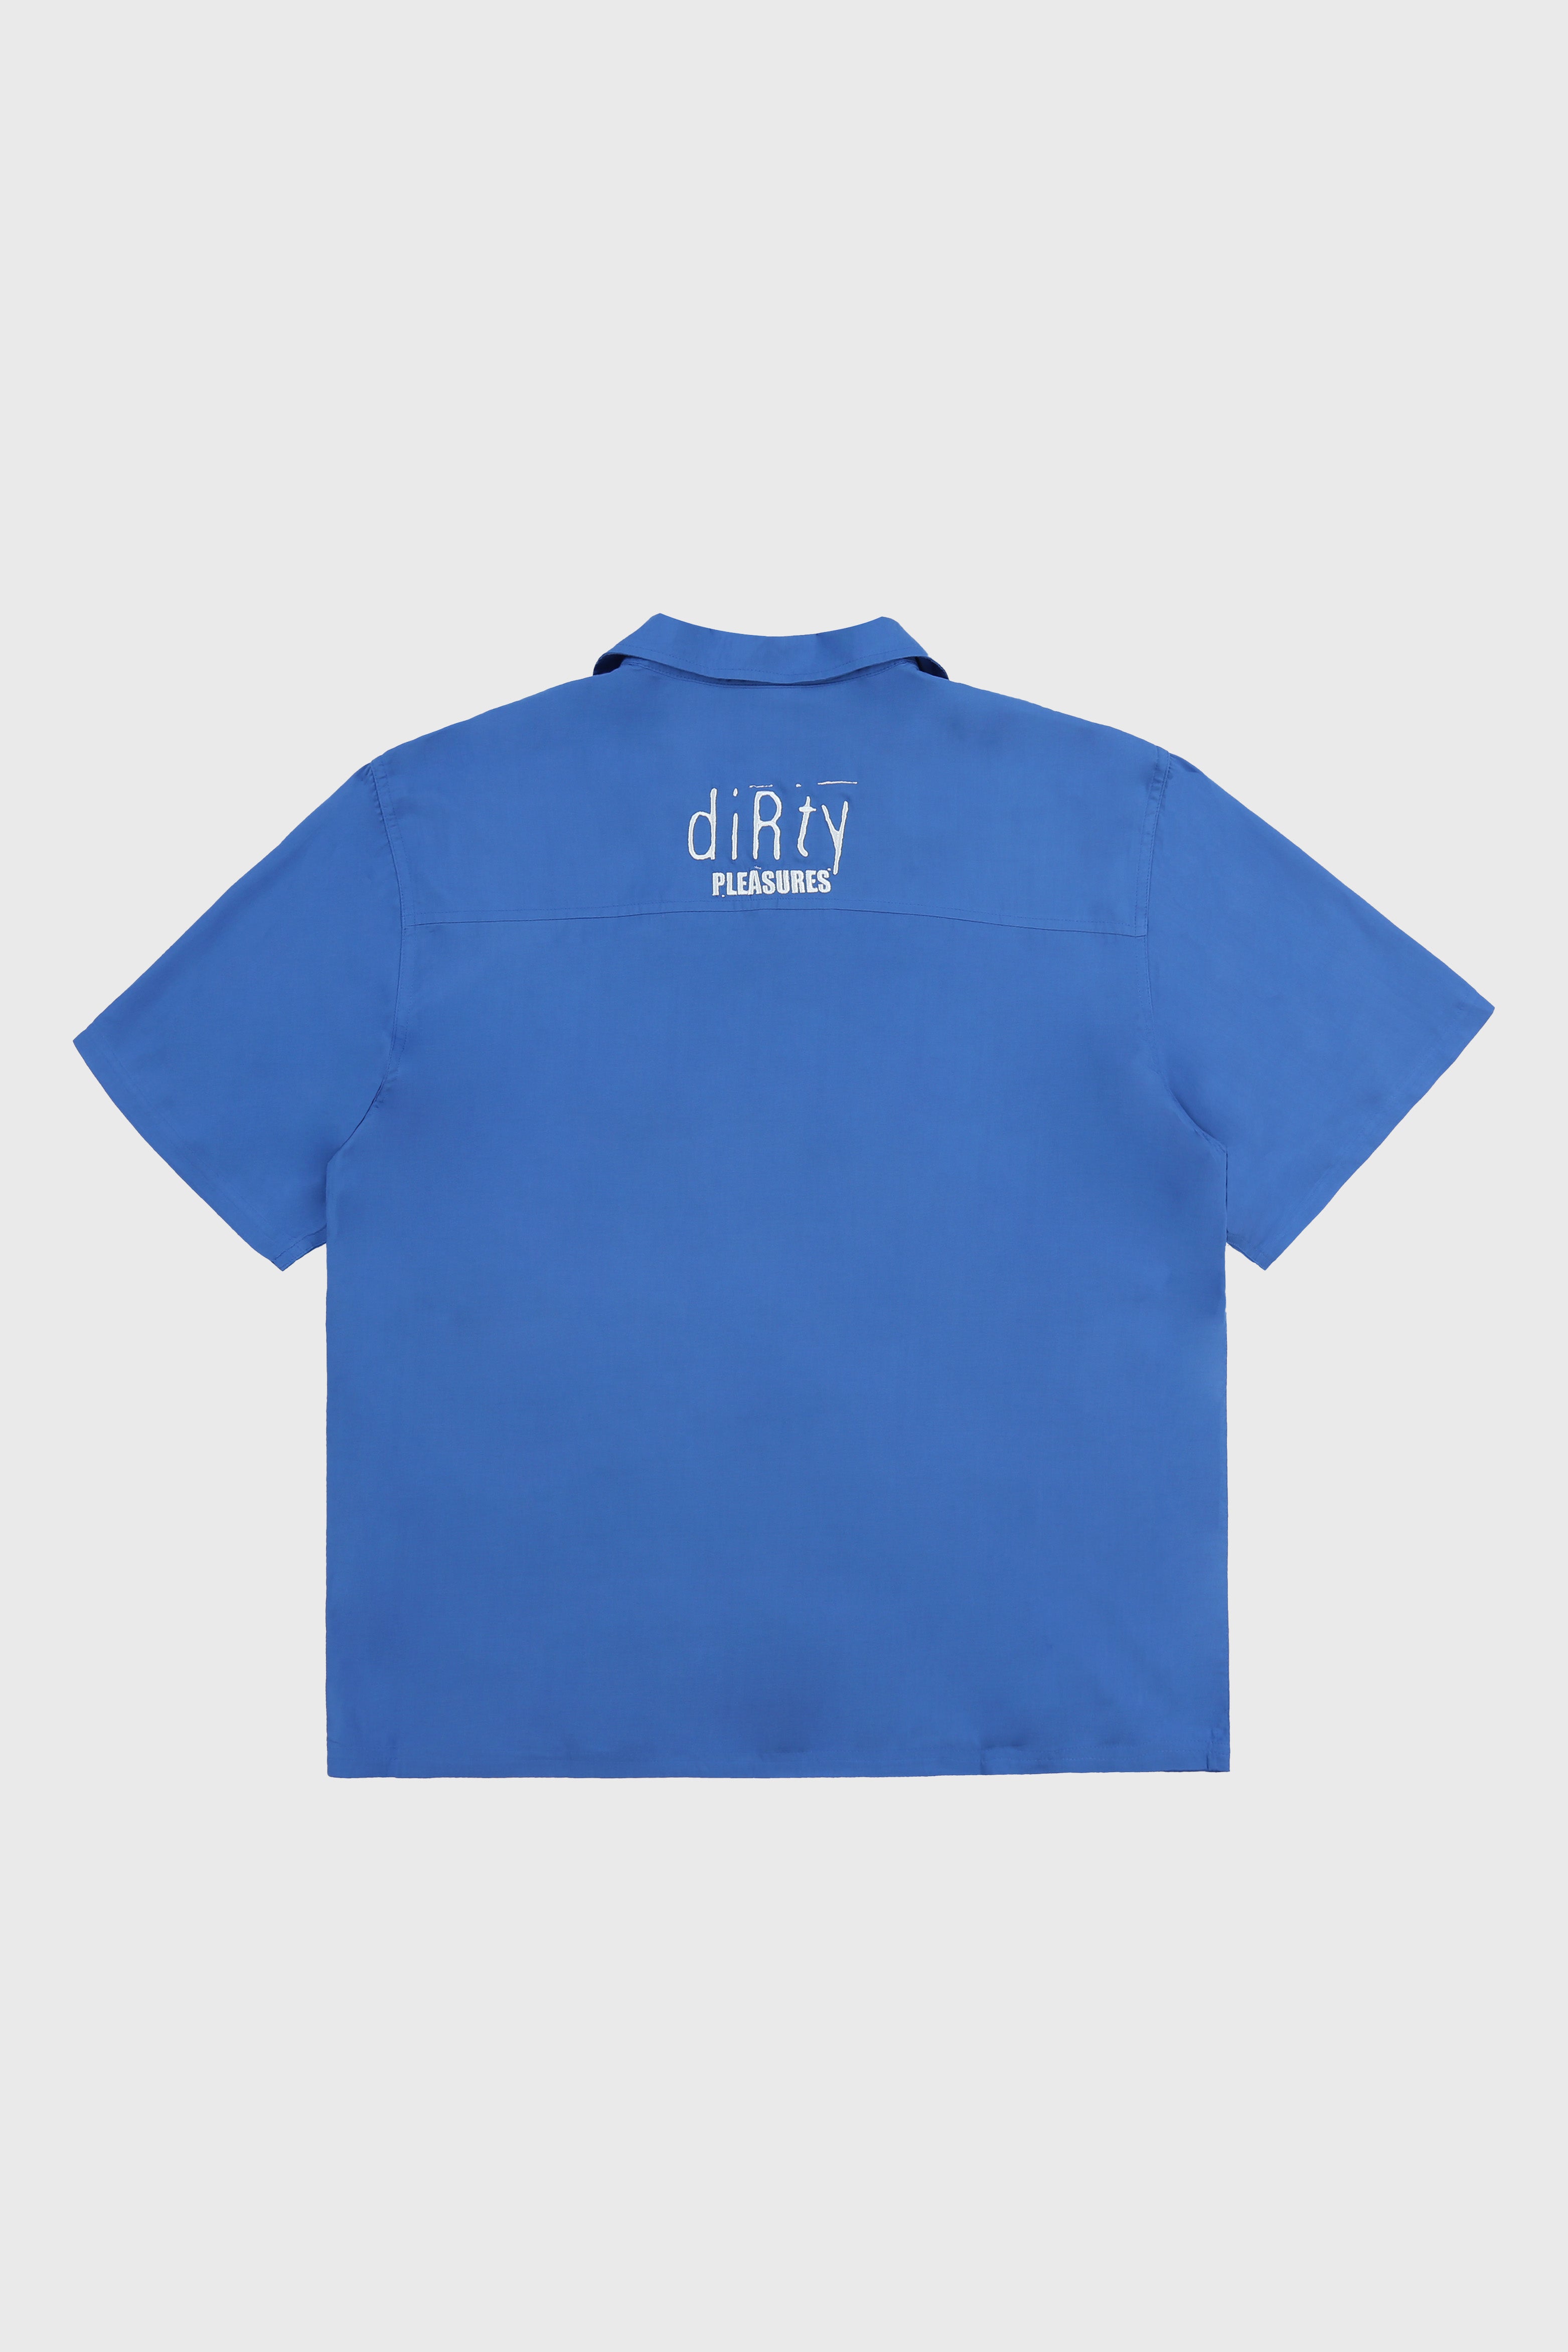 Selectshop FRAME - PLEASURES Alien Camp Collar Shirt Shirts Concept Store Dubai